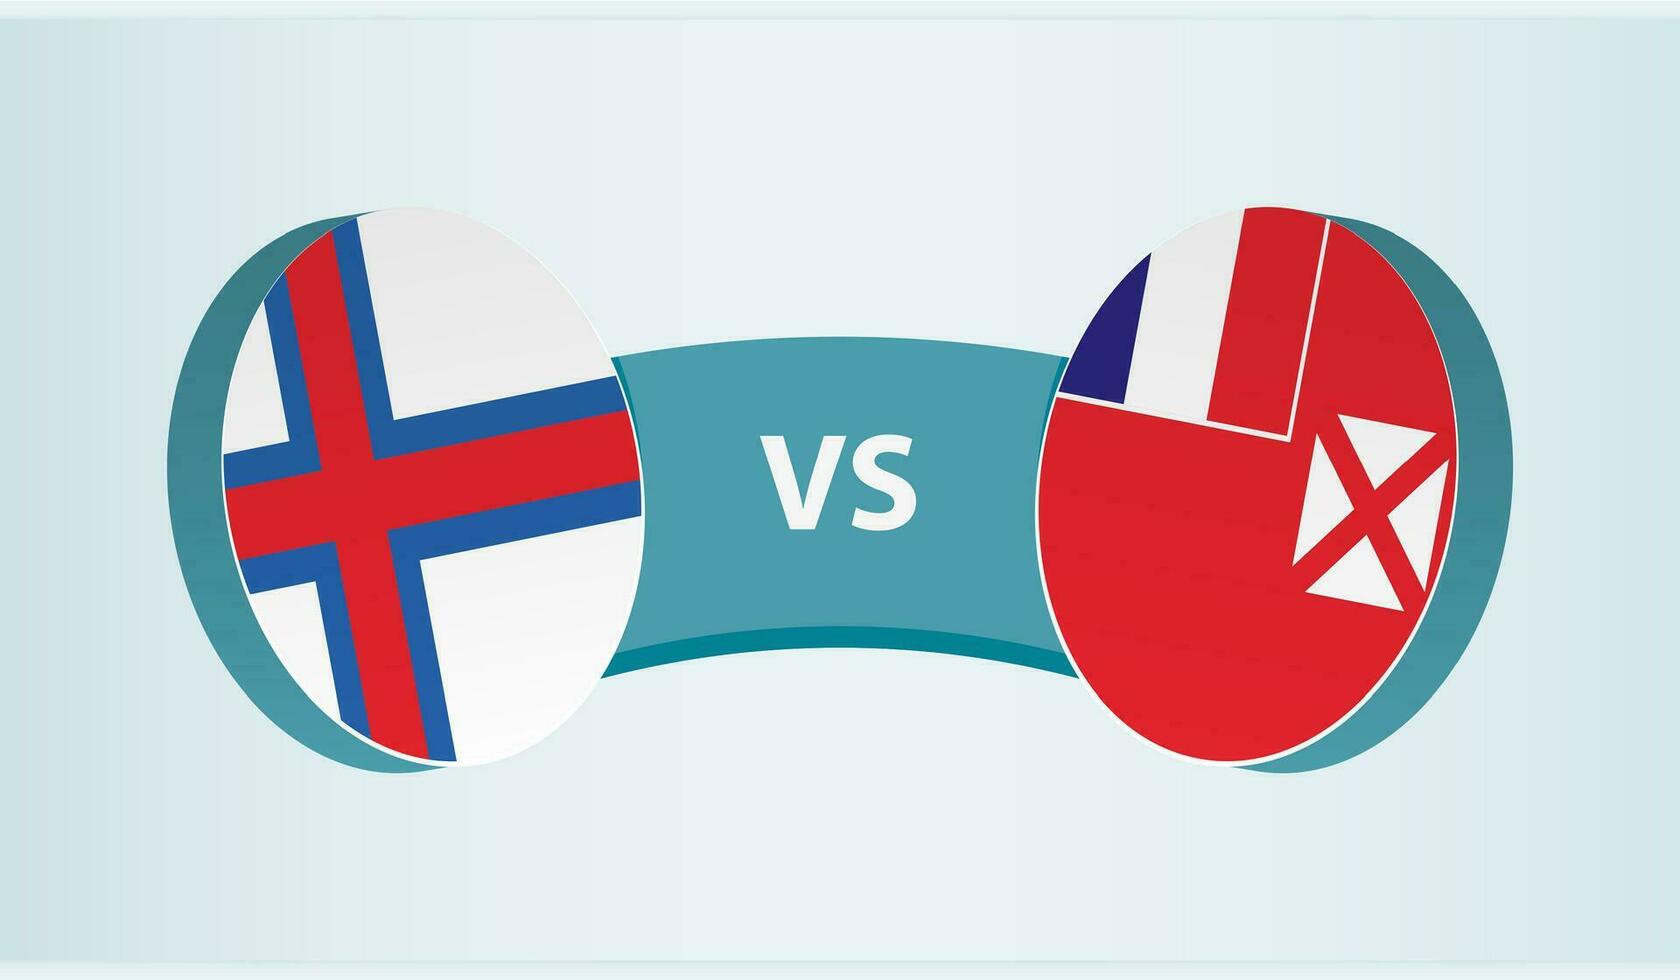 Faeröer eilanden versus wallis en futuna, team sport- wedstrijd concept. vector